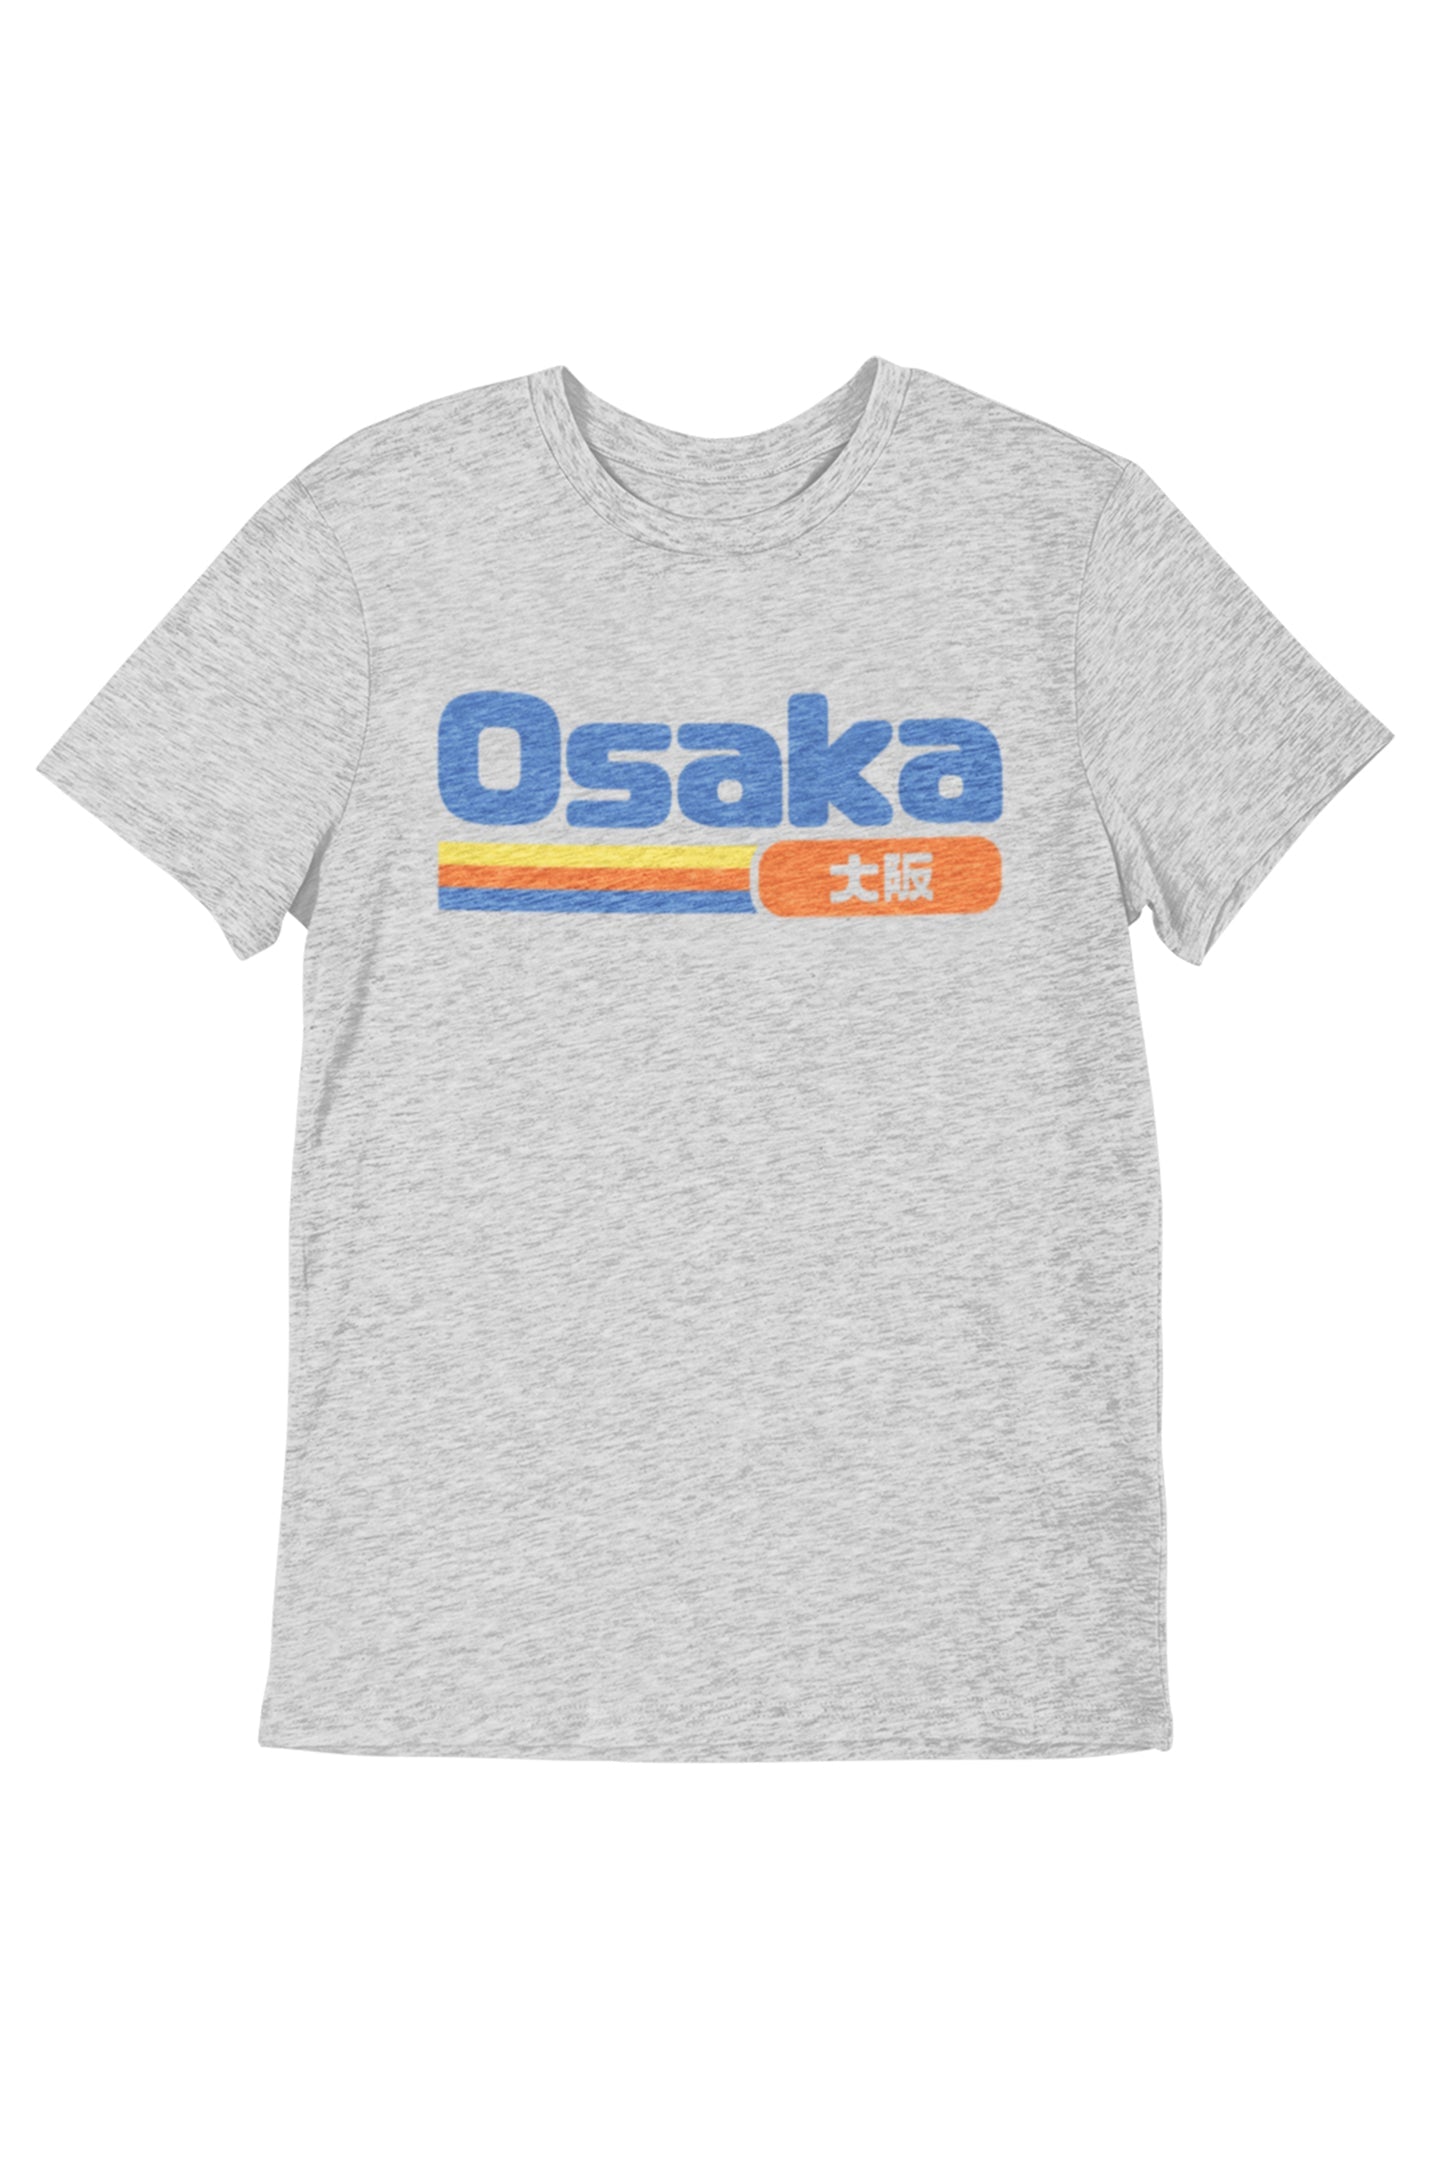 Osaka - Men's